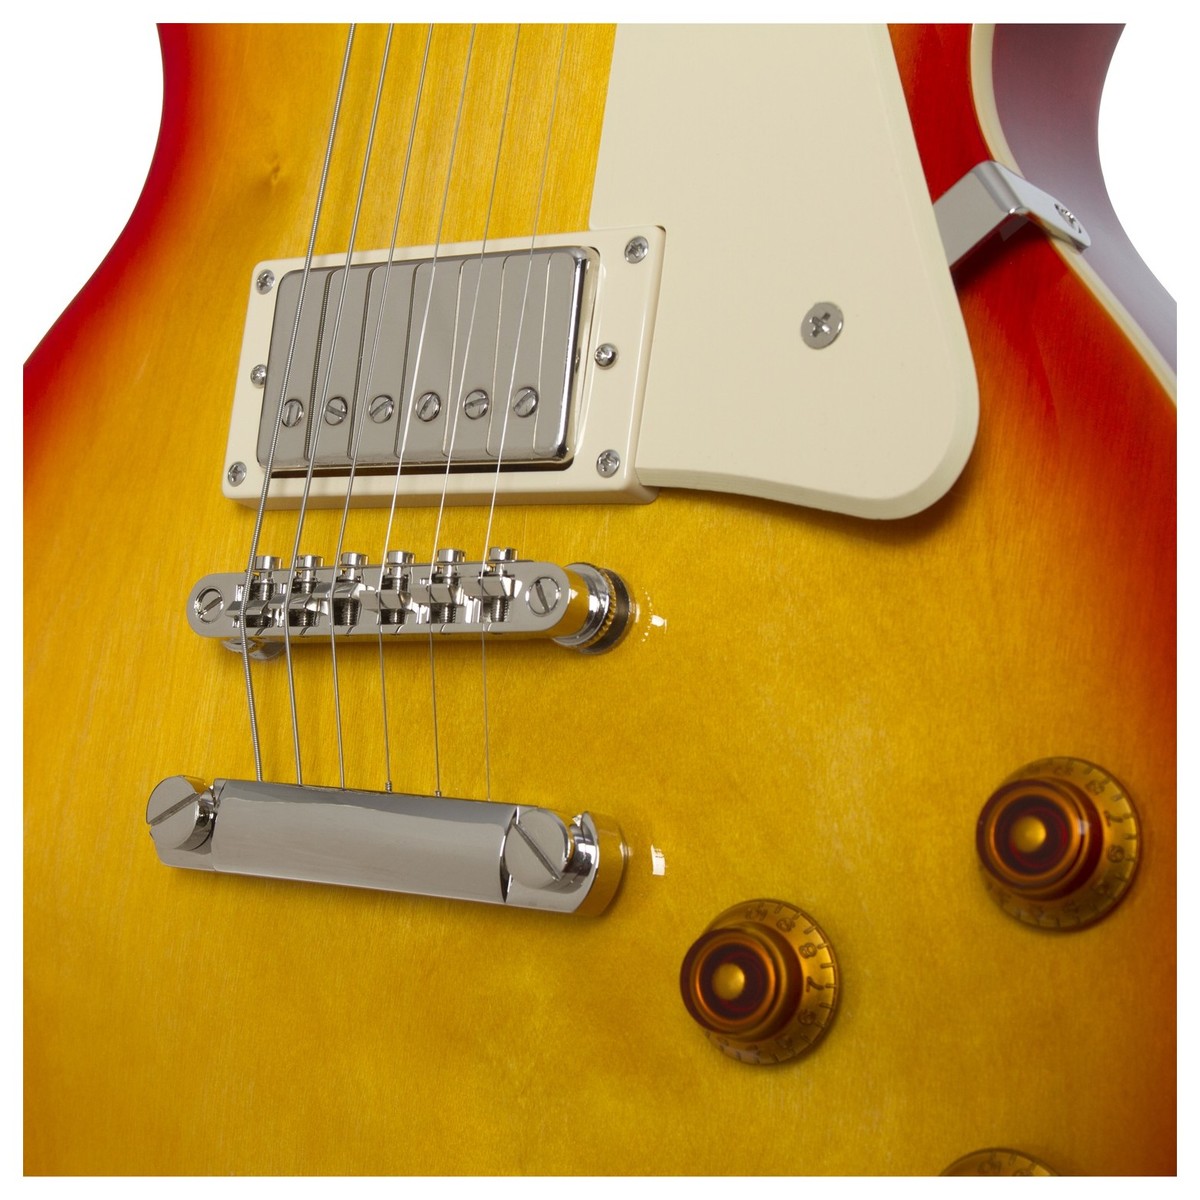 Epiphone Les Paul Standard Hh Ht Pf - Faded Cherry Sunburst - Guitarra eléctrica de corte único. - Variation 3